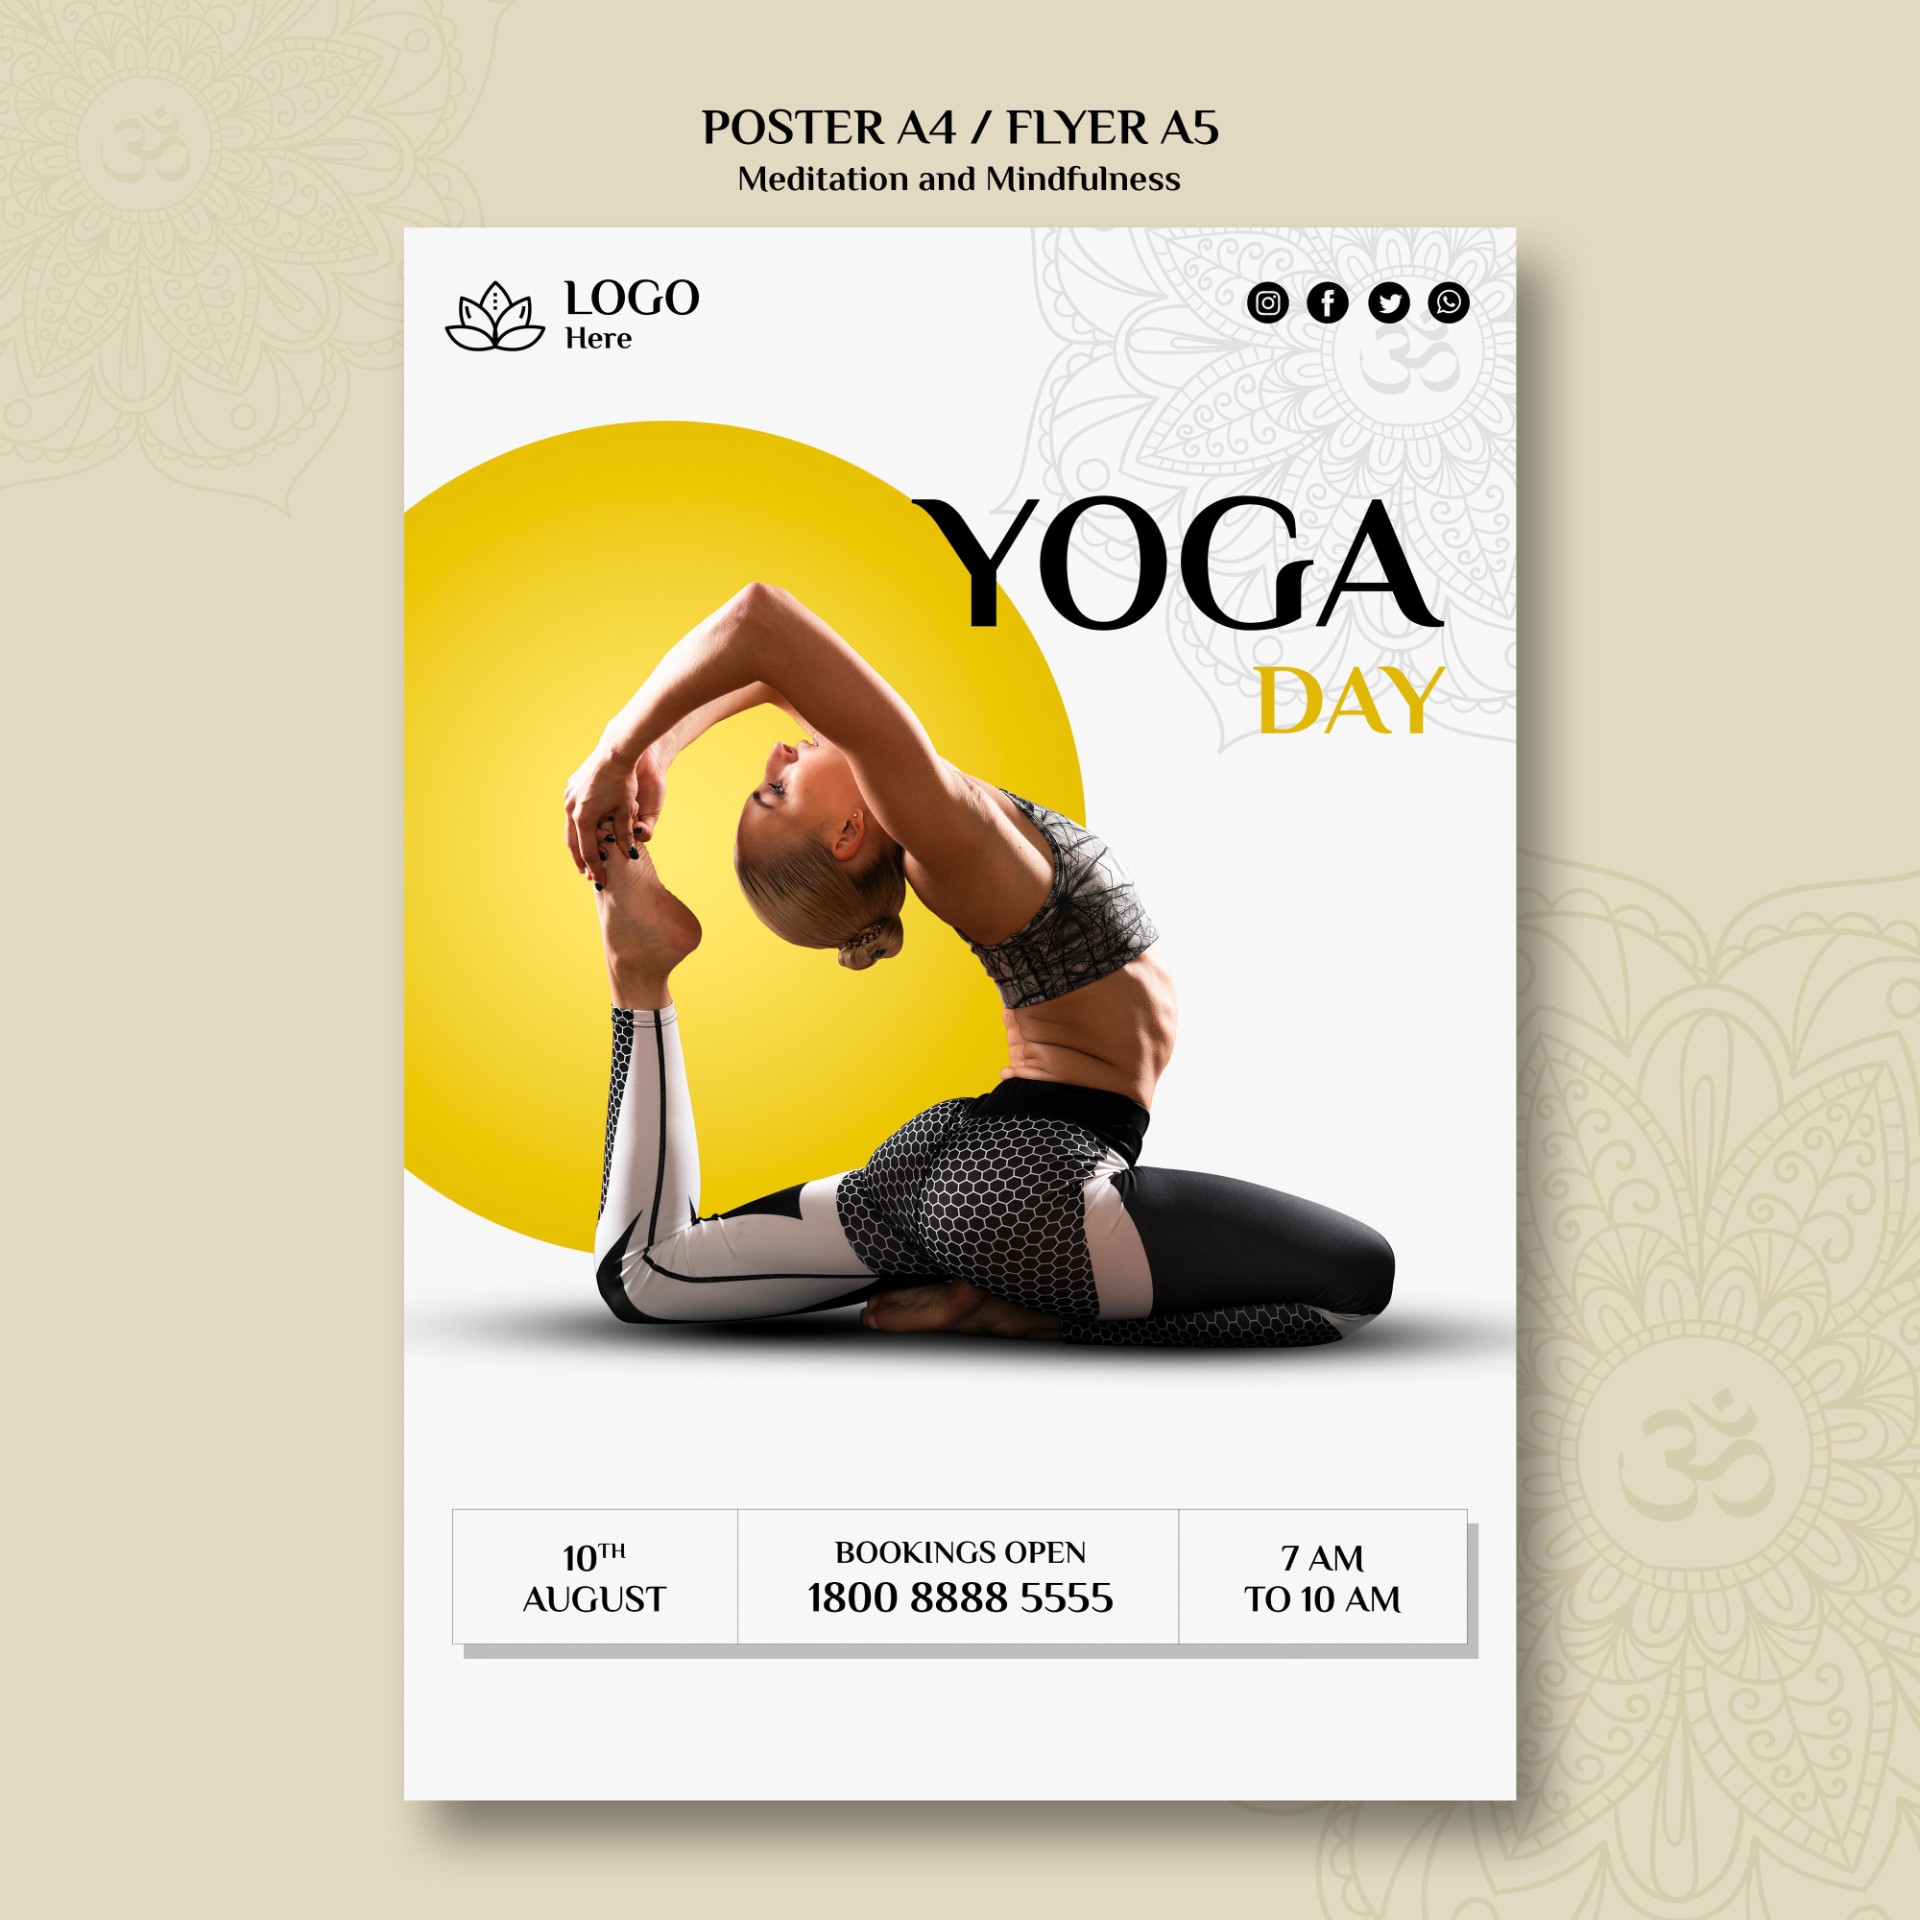 621国际瑜伽日广告宣传海报0